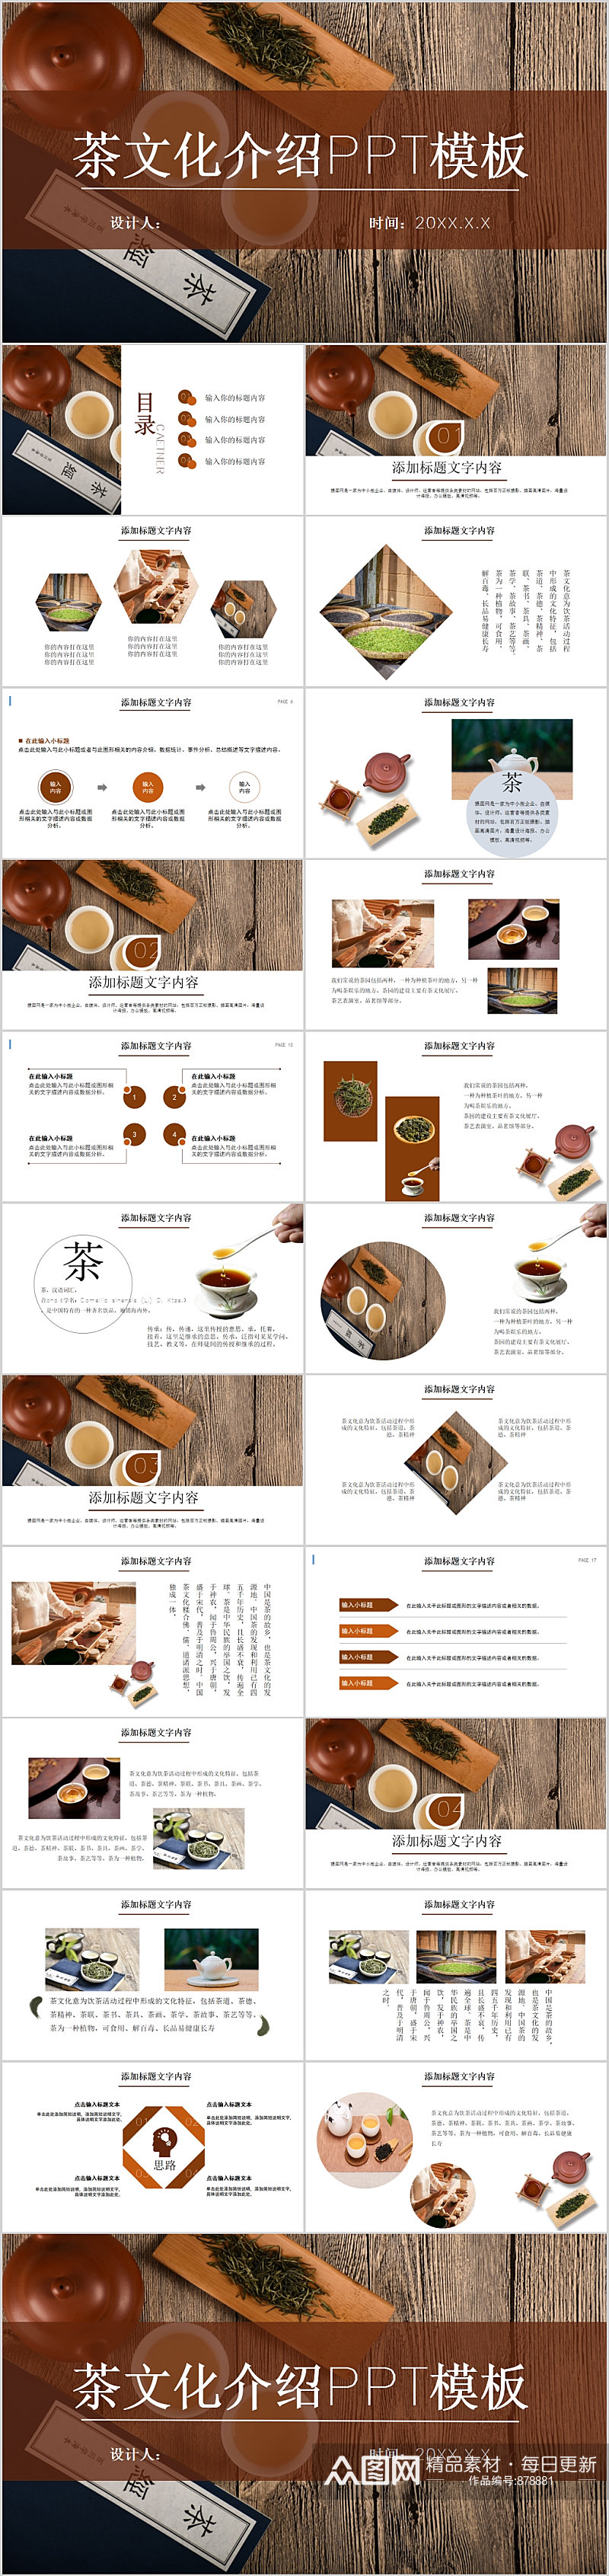 古典木板茶文化介绍PPT模板素材